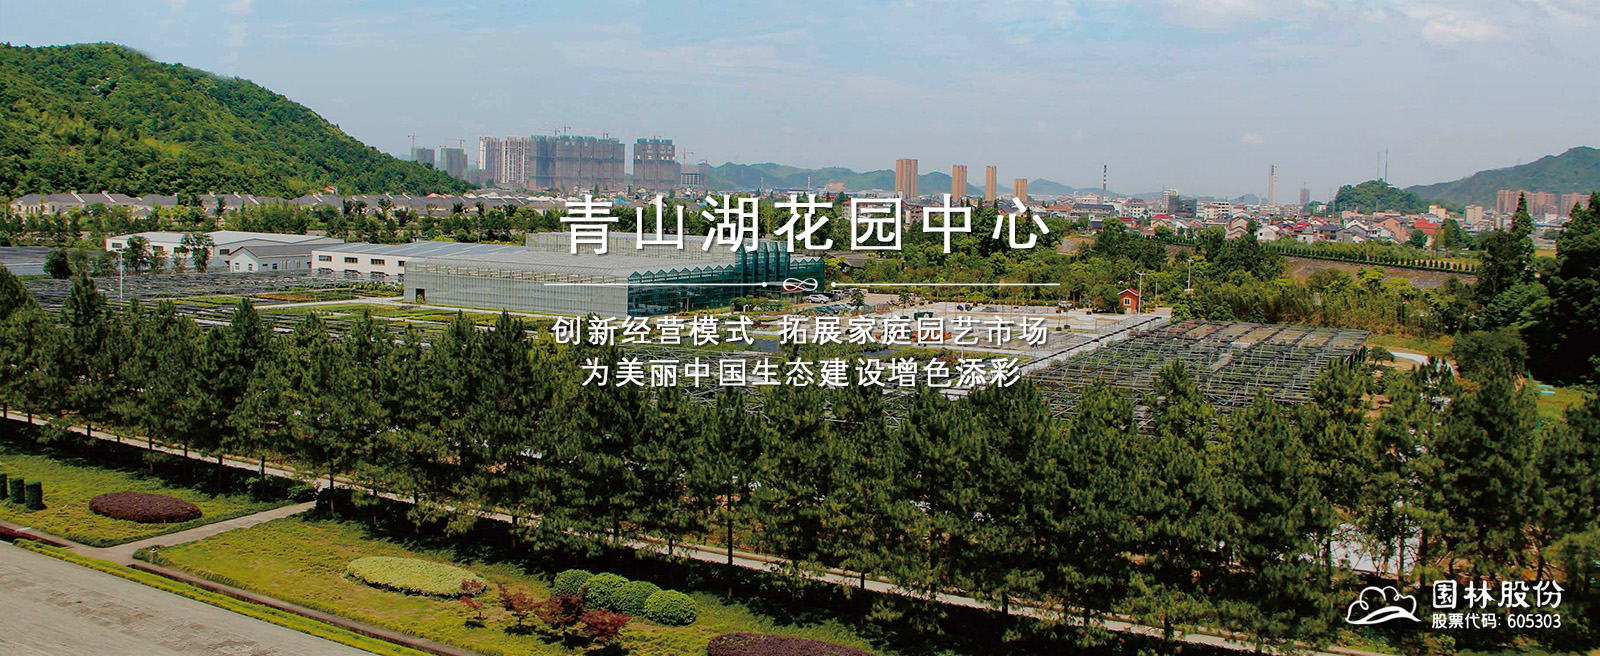 关于当前产品ag真人登录·(中国)官方网站的成功案例等相关图片